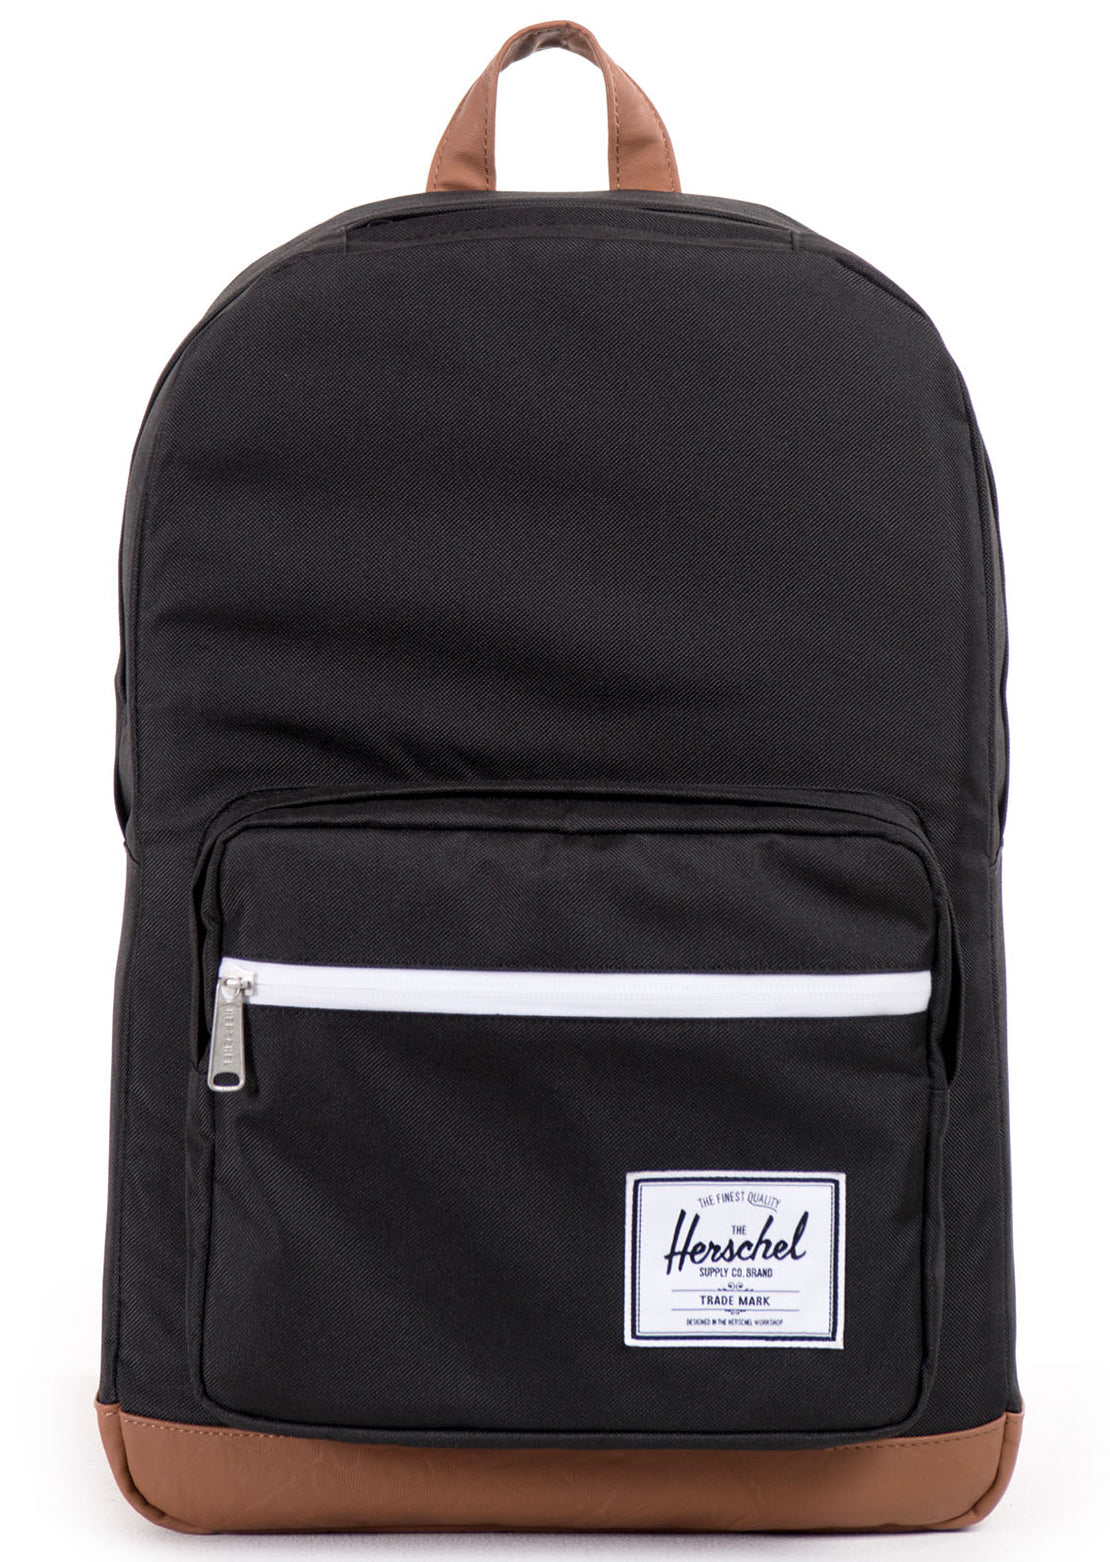 Herschel Pop Quiz Backpack Black/Tan Synthetic Leather